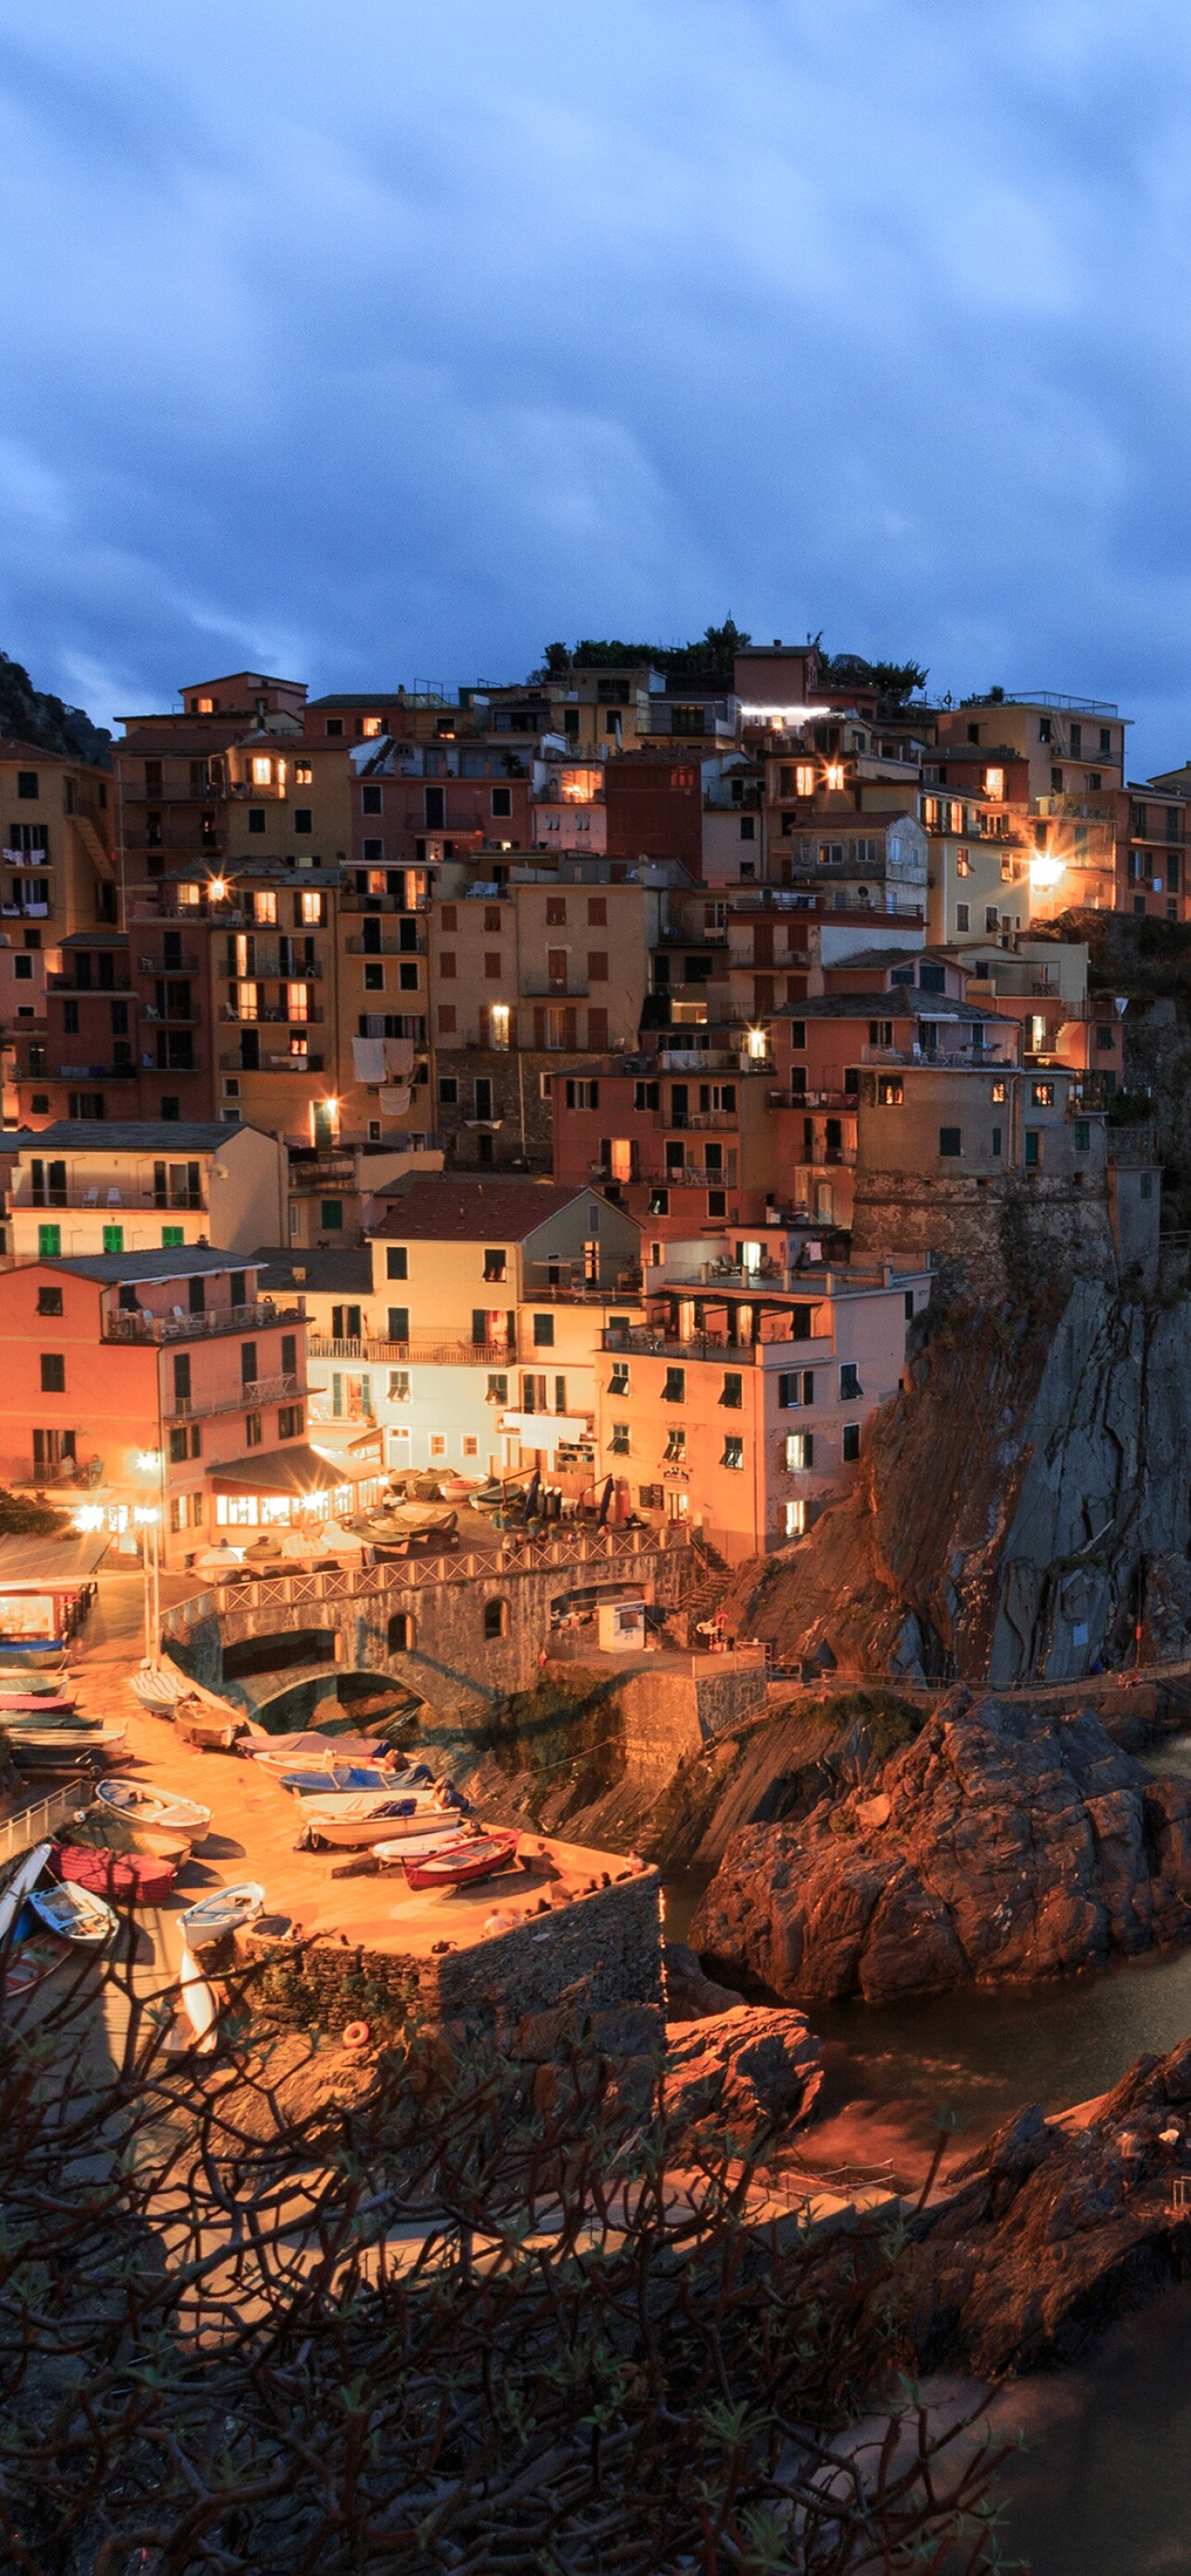 Italy: Manarola, Cinque Terre, Seascape, City lights, Dusk. 1290x2780 HD Wallpaper.